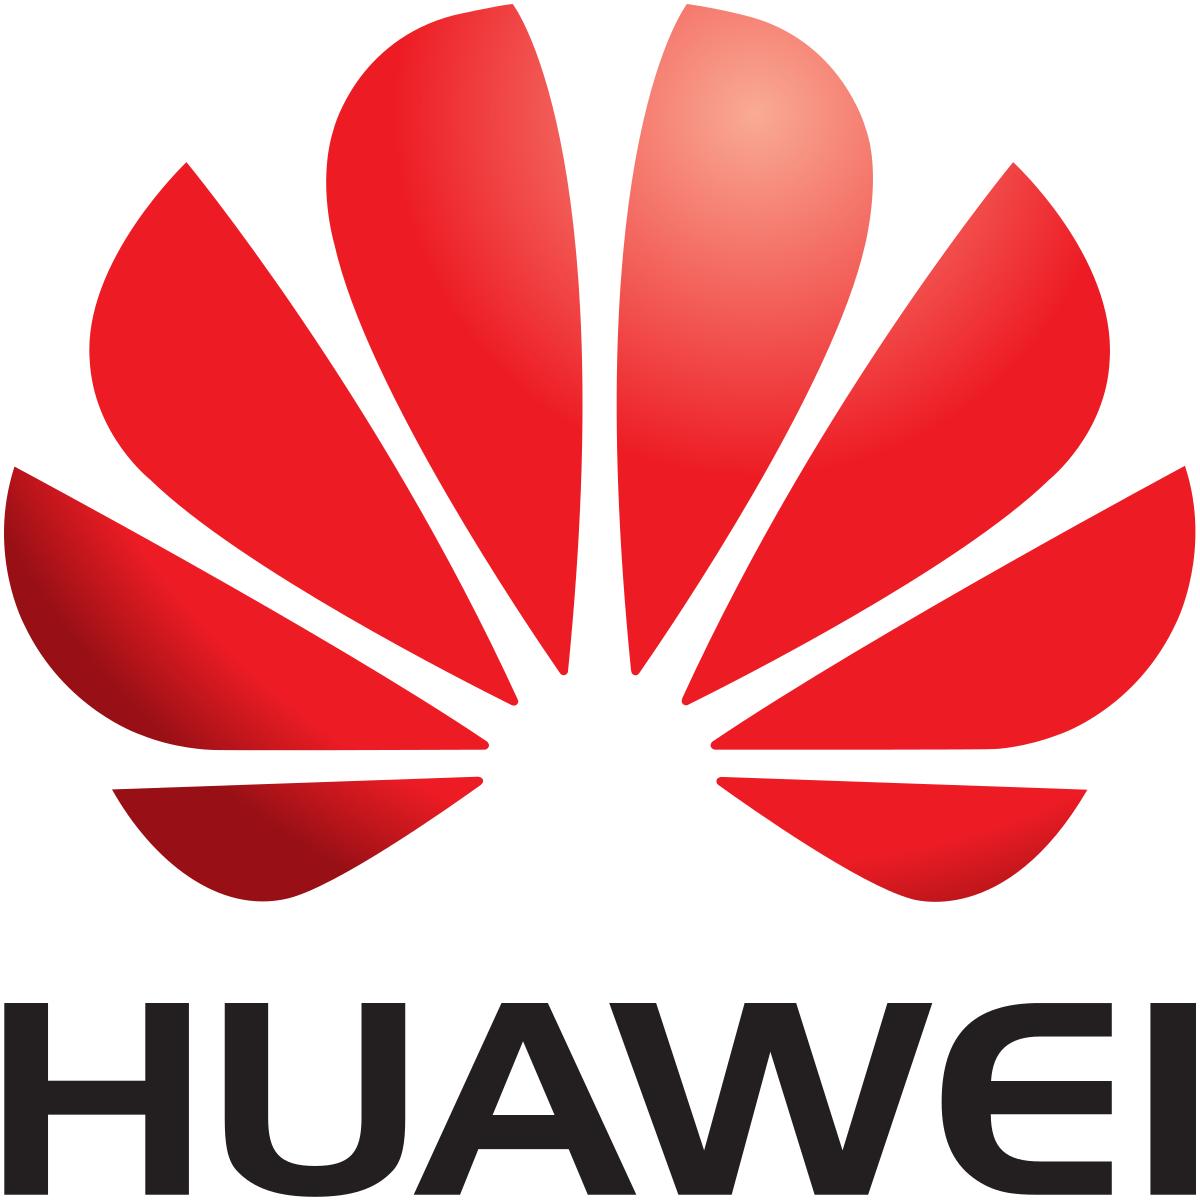 Китай РУЛИТ, Huawei — ведущий мировой поставщик, компании США нервно курят в сторонке....